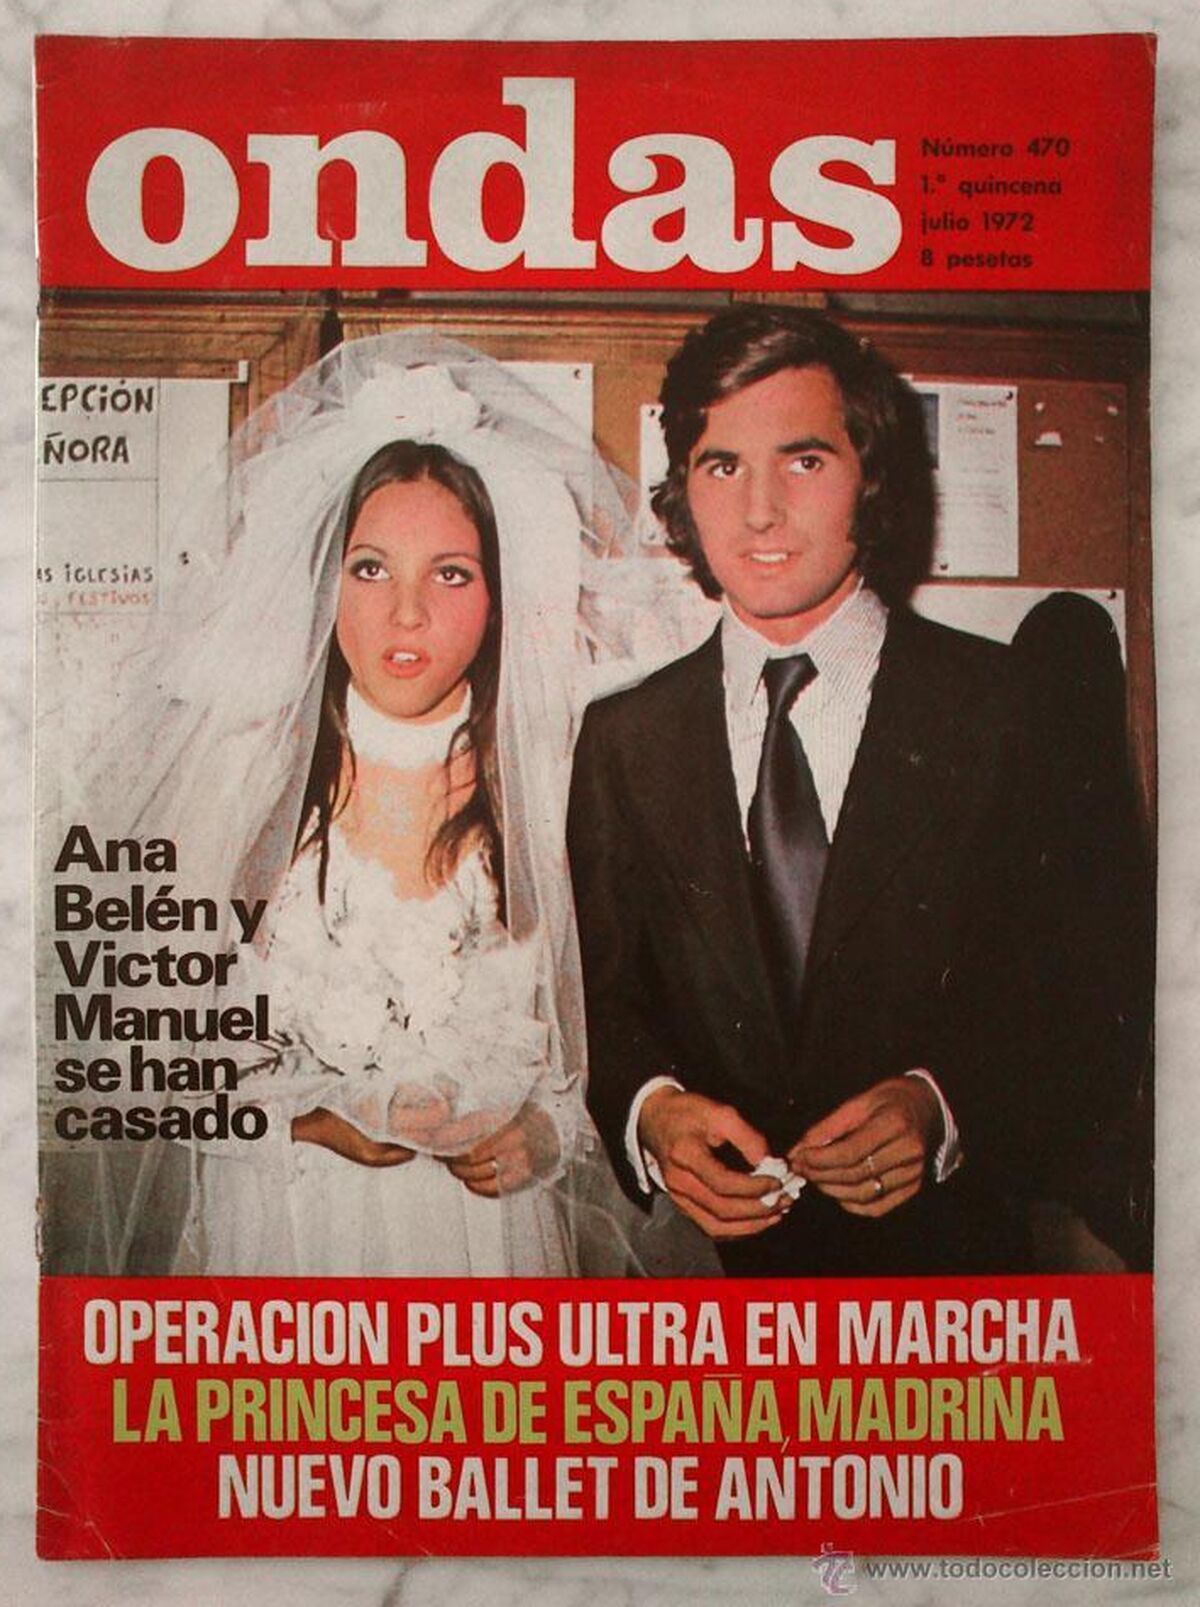 Cobertura de uma revista da época com imagens do casamento de Ana Belén e Victor Manuel.